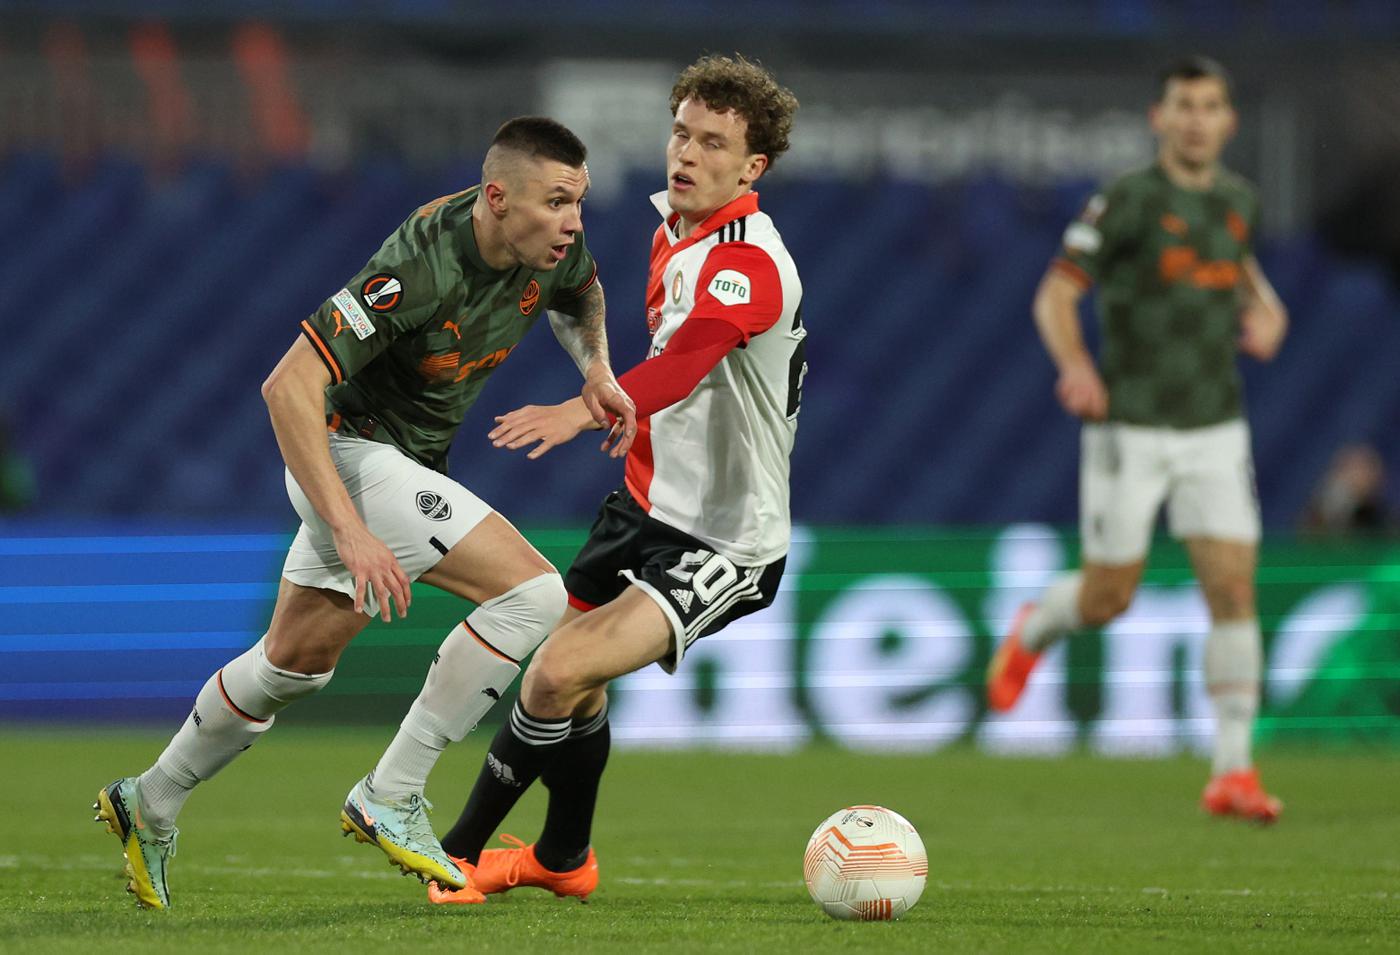 Feyenoord - Shakhtar - 7-1. Europa League. Spielbericht, Statistik